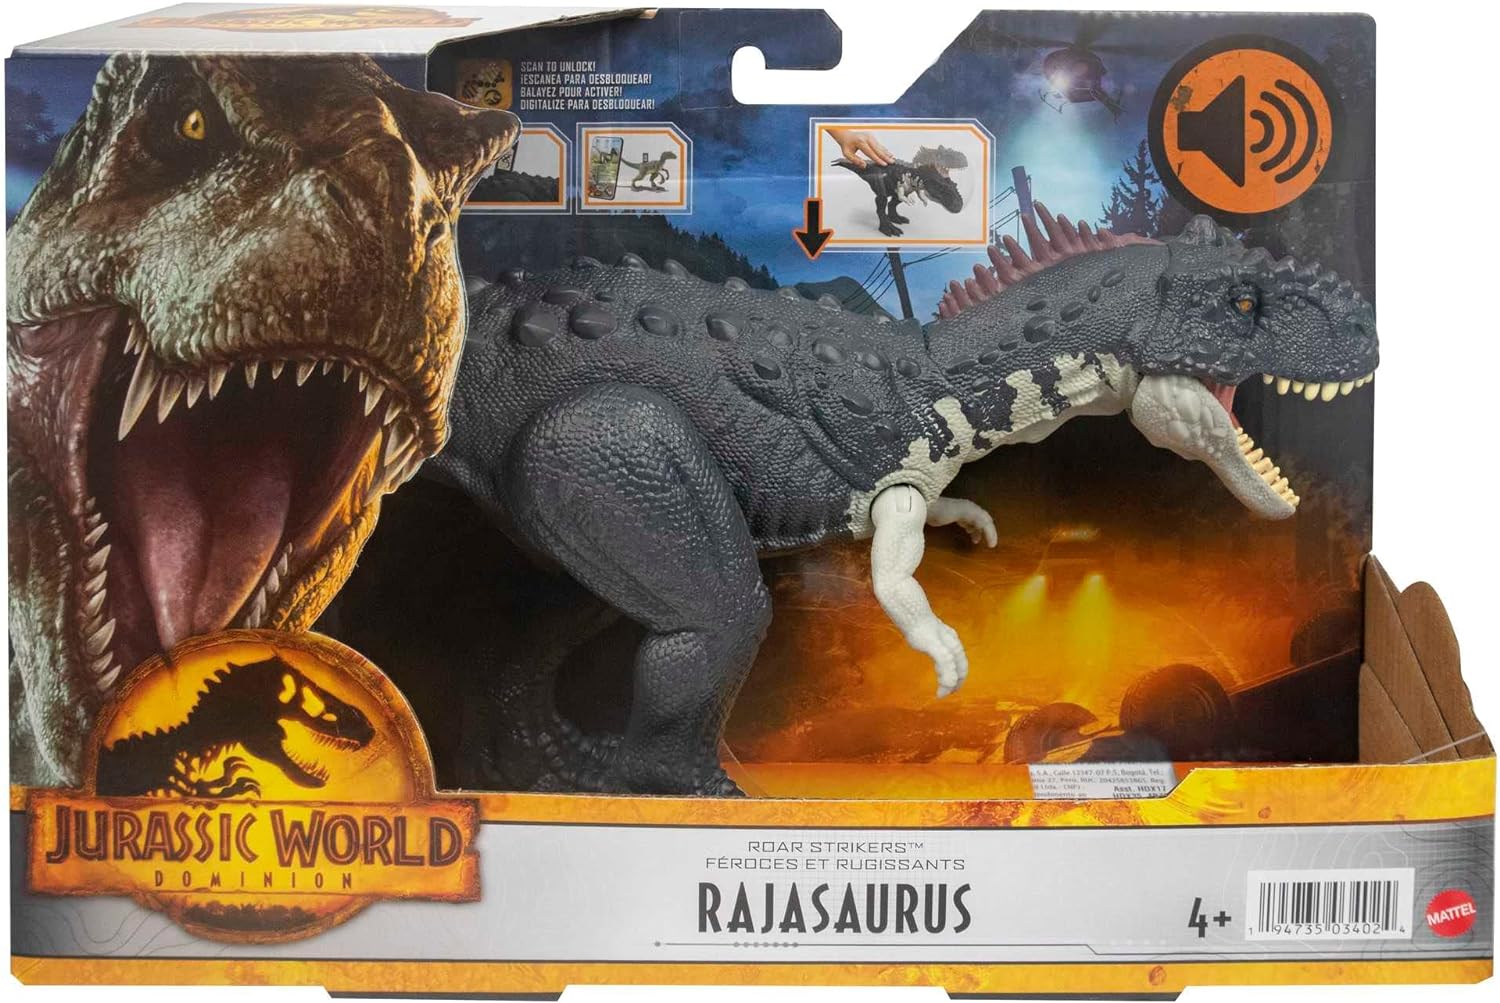 Rajasauro Jurassic World Dominion - Clicca l'immagine per chiudere